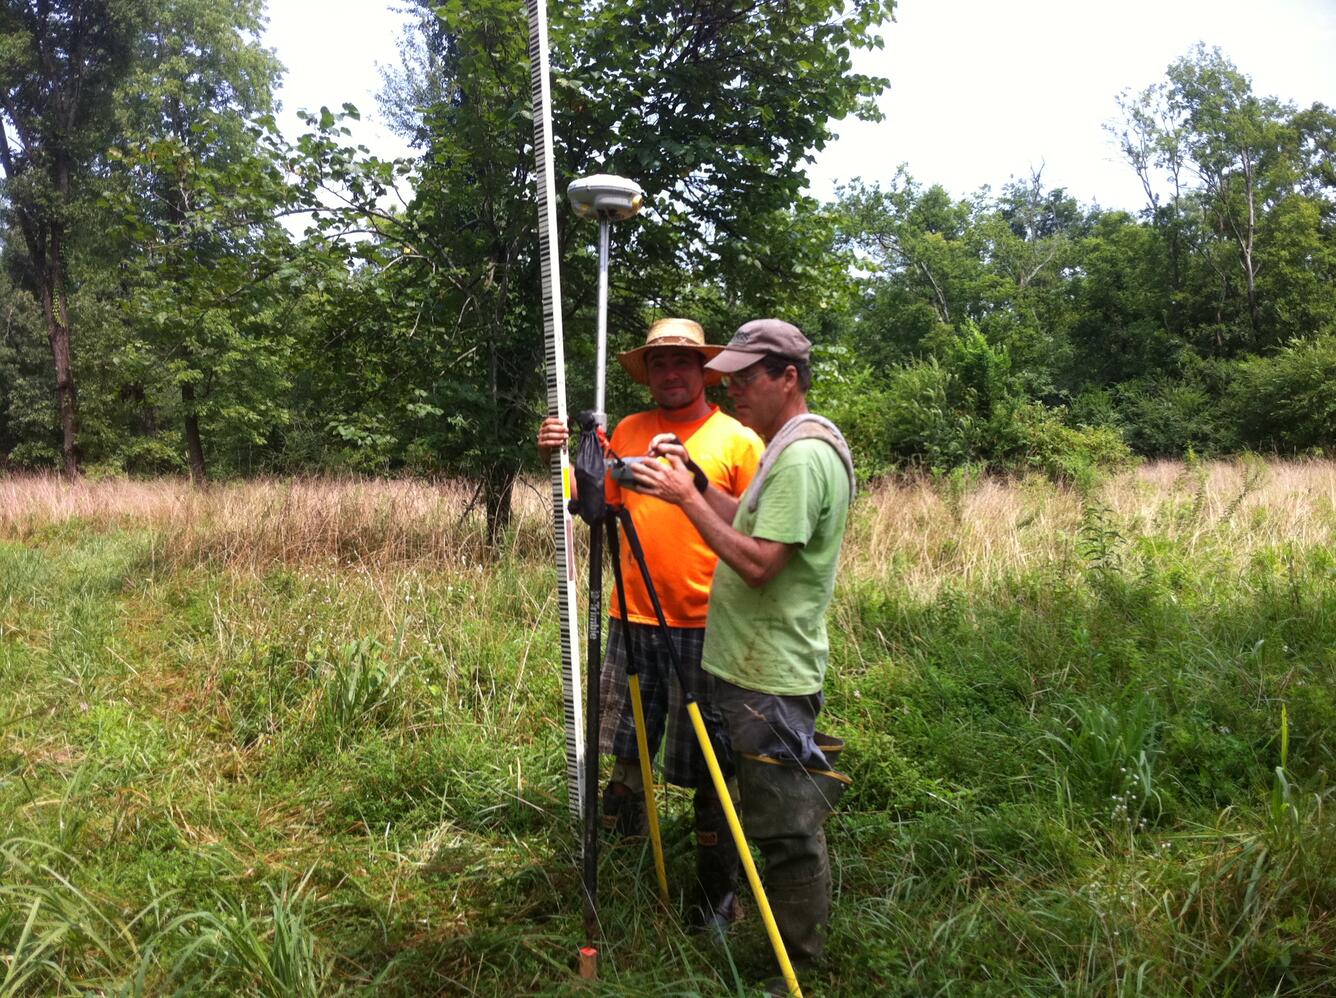 USGS Kentucky staff running levels using GPS